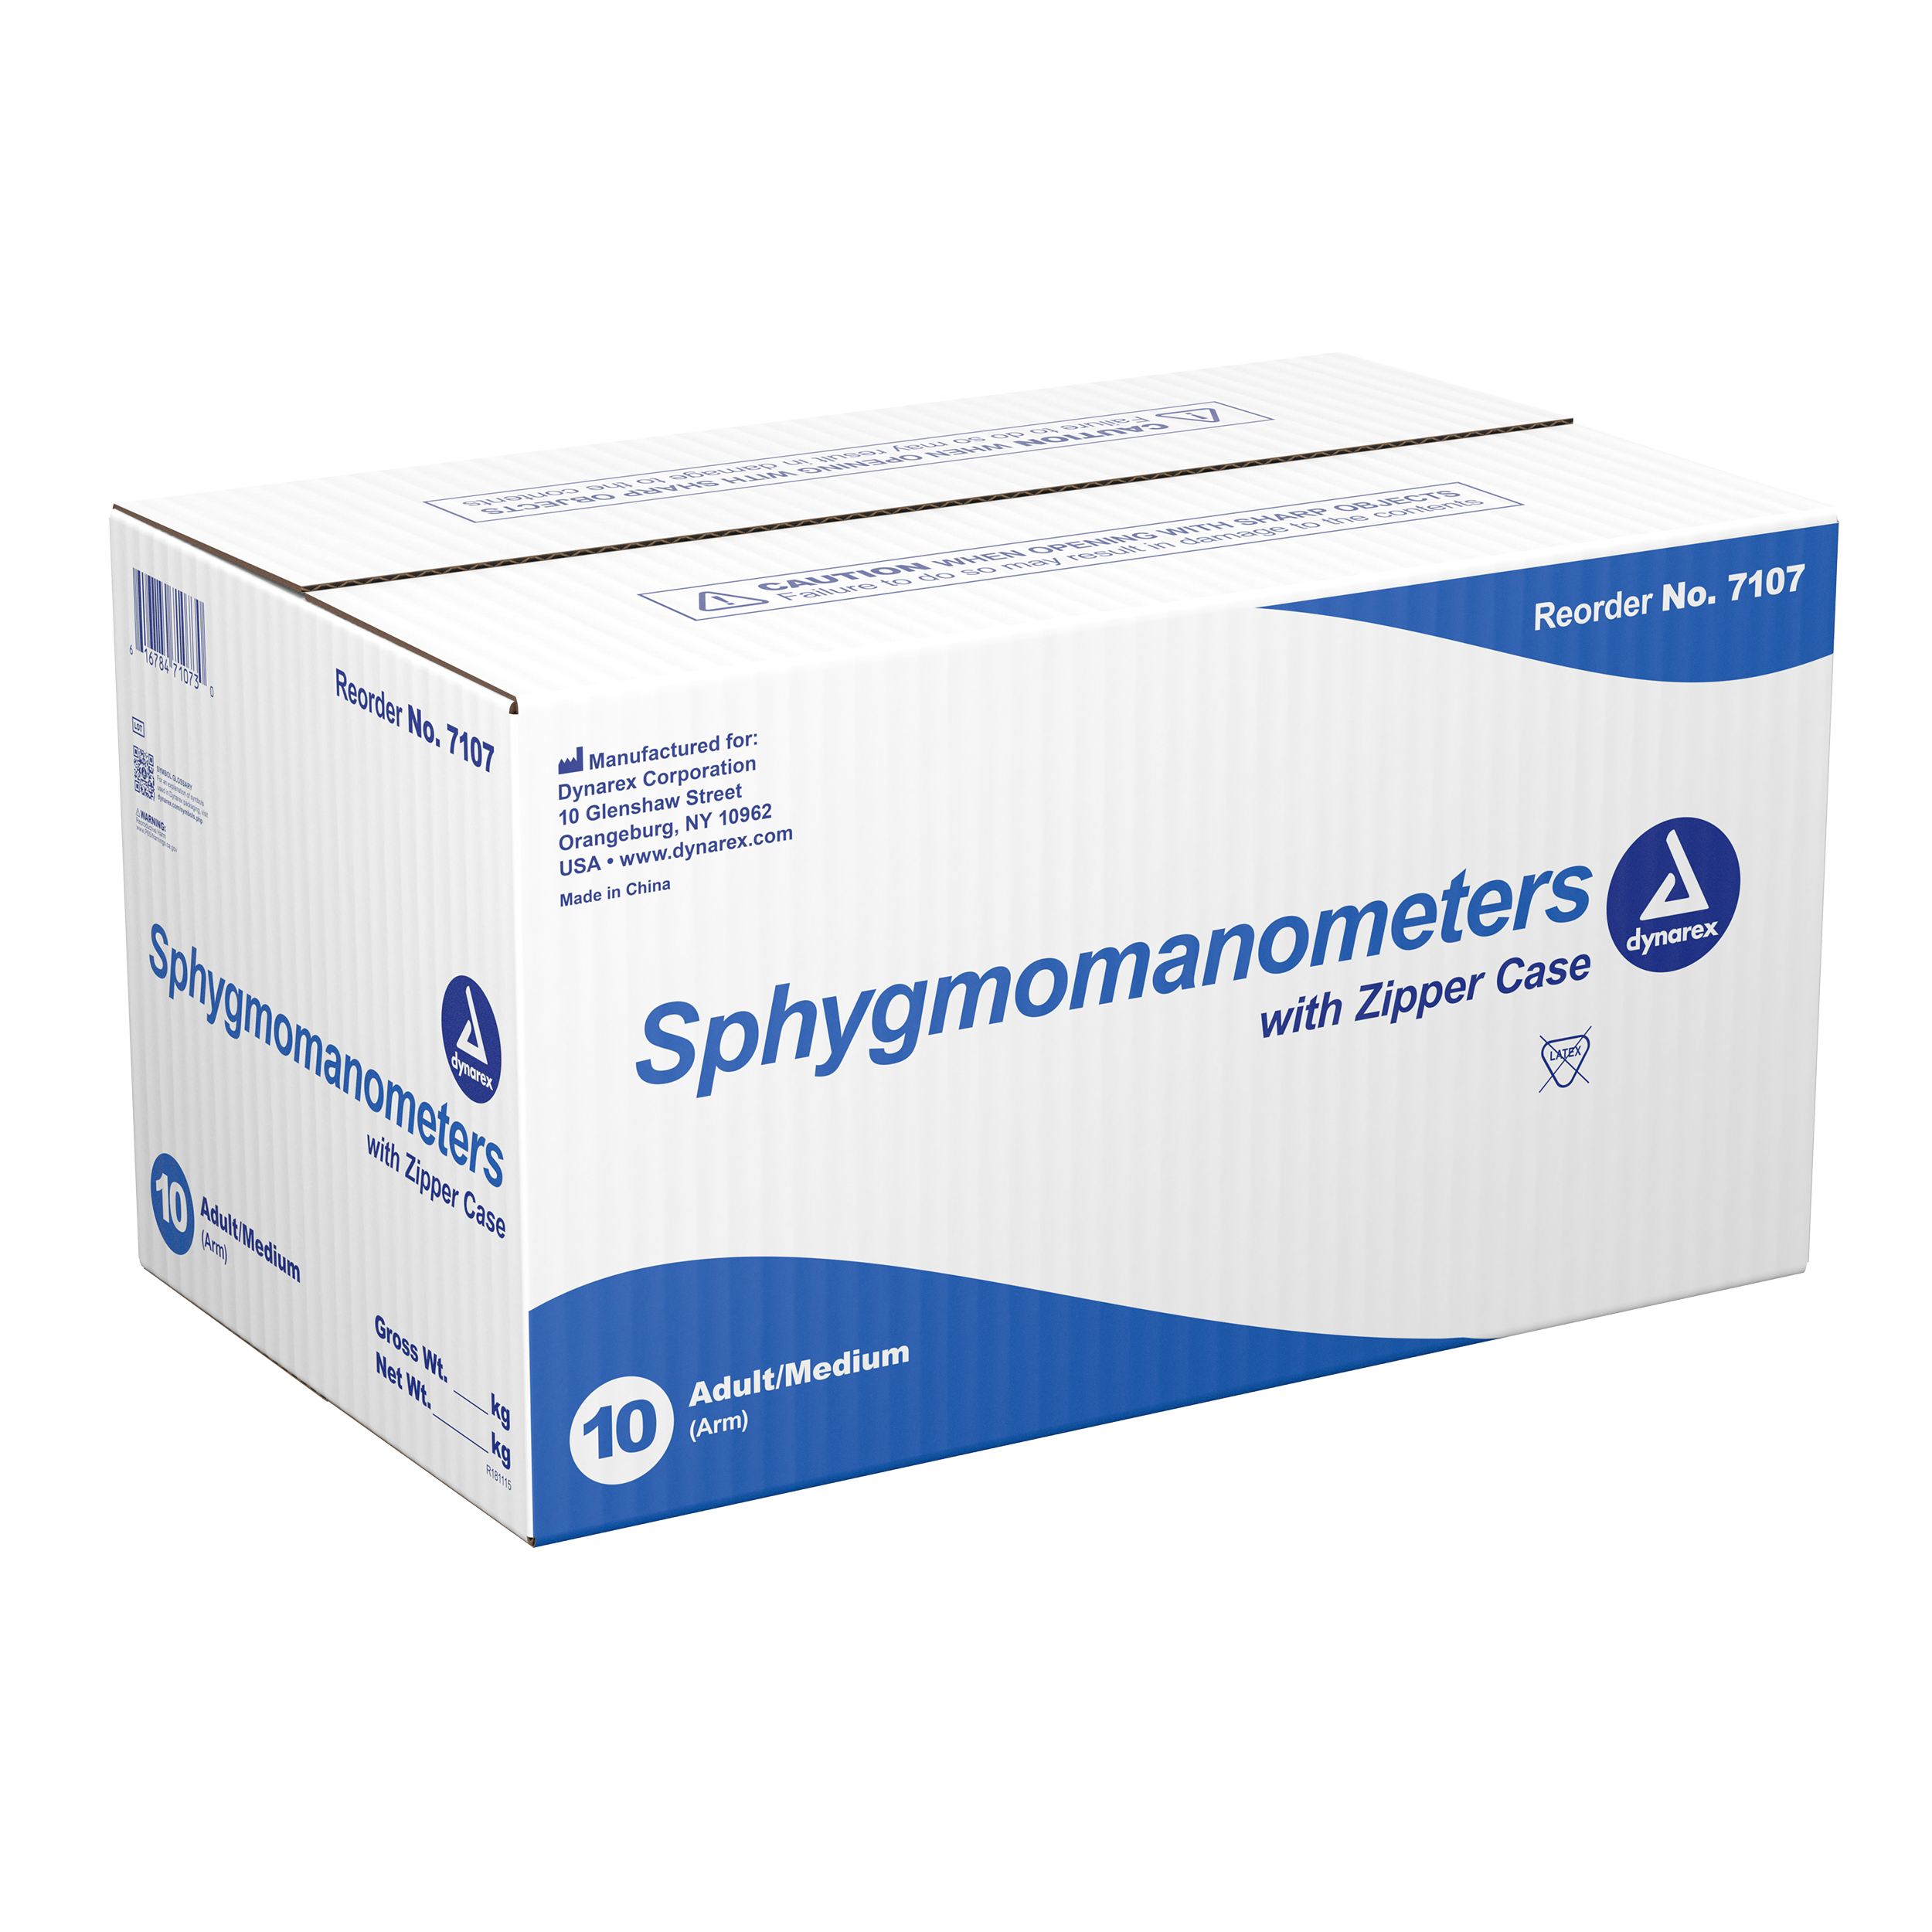 Sphygmomanometer - Adult /Medium (Arm) - 10/Cs